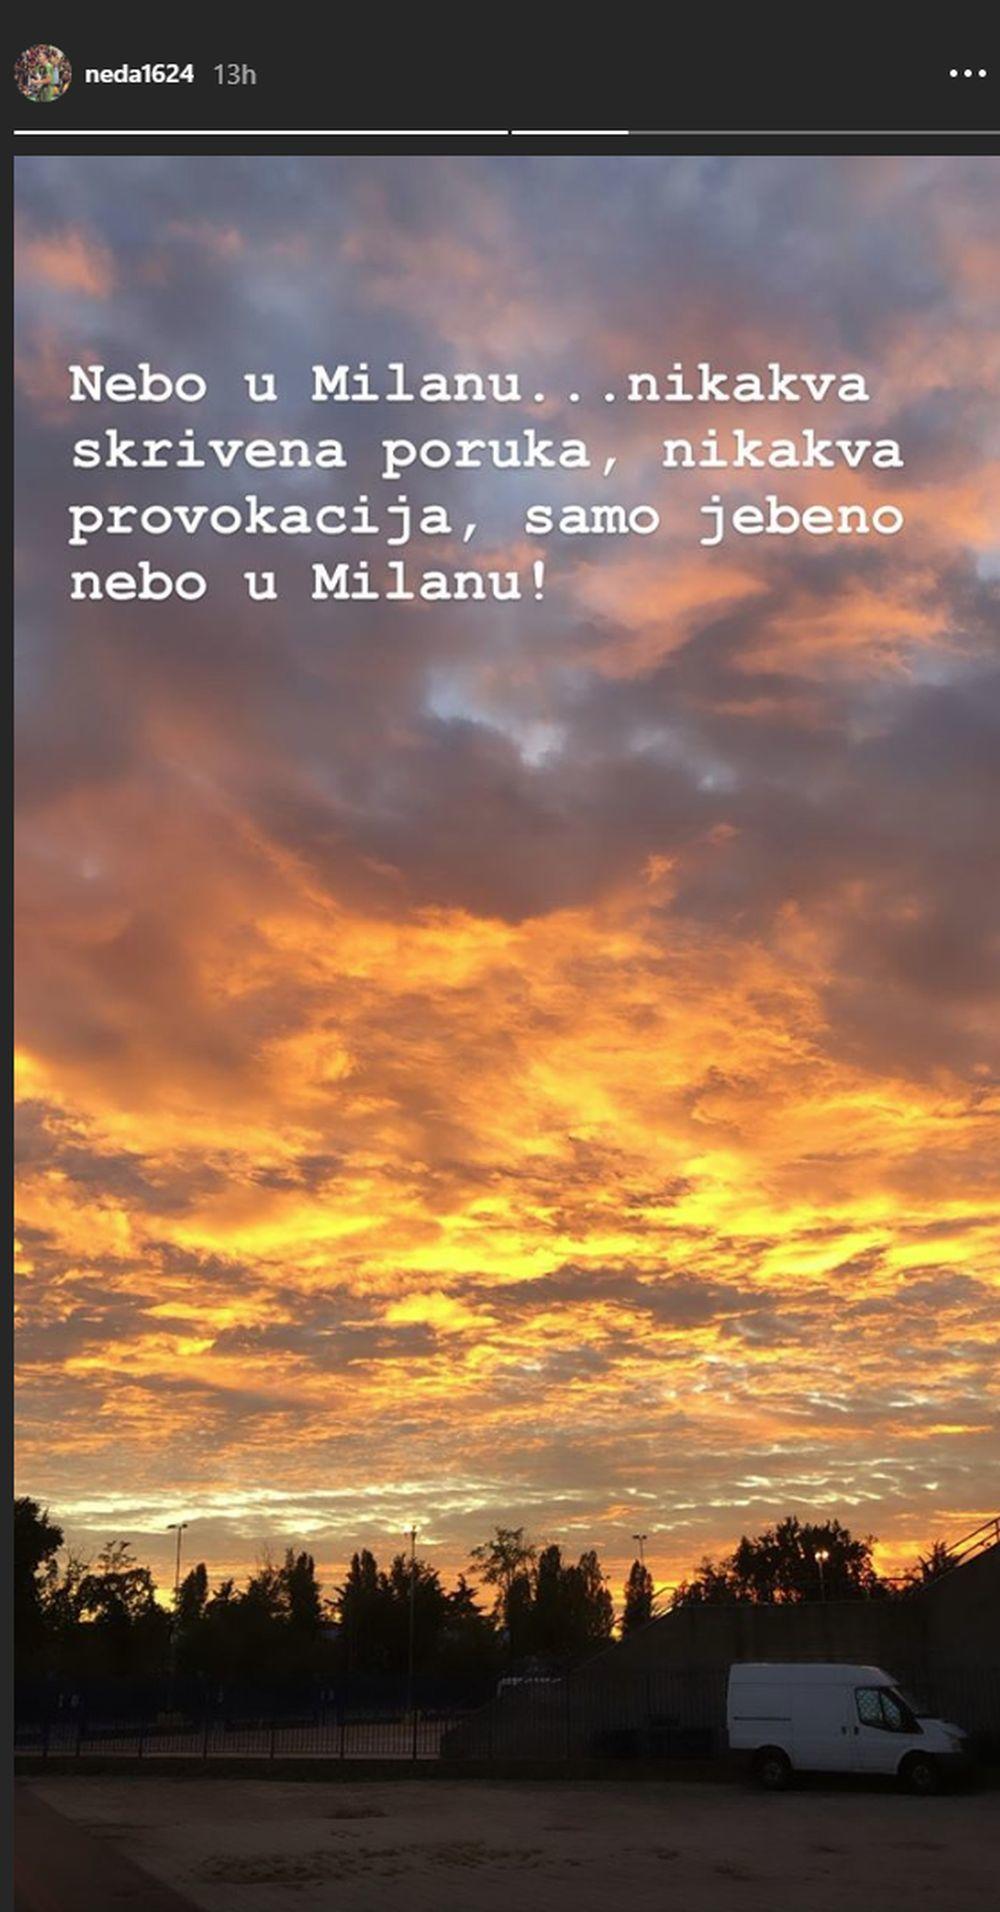 Nemanja Nedović je ovu poruku objavio na Instagramu